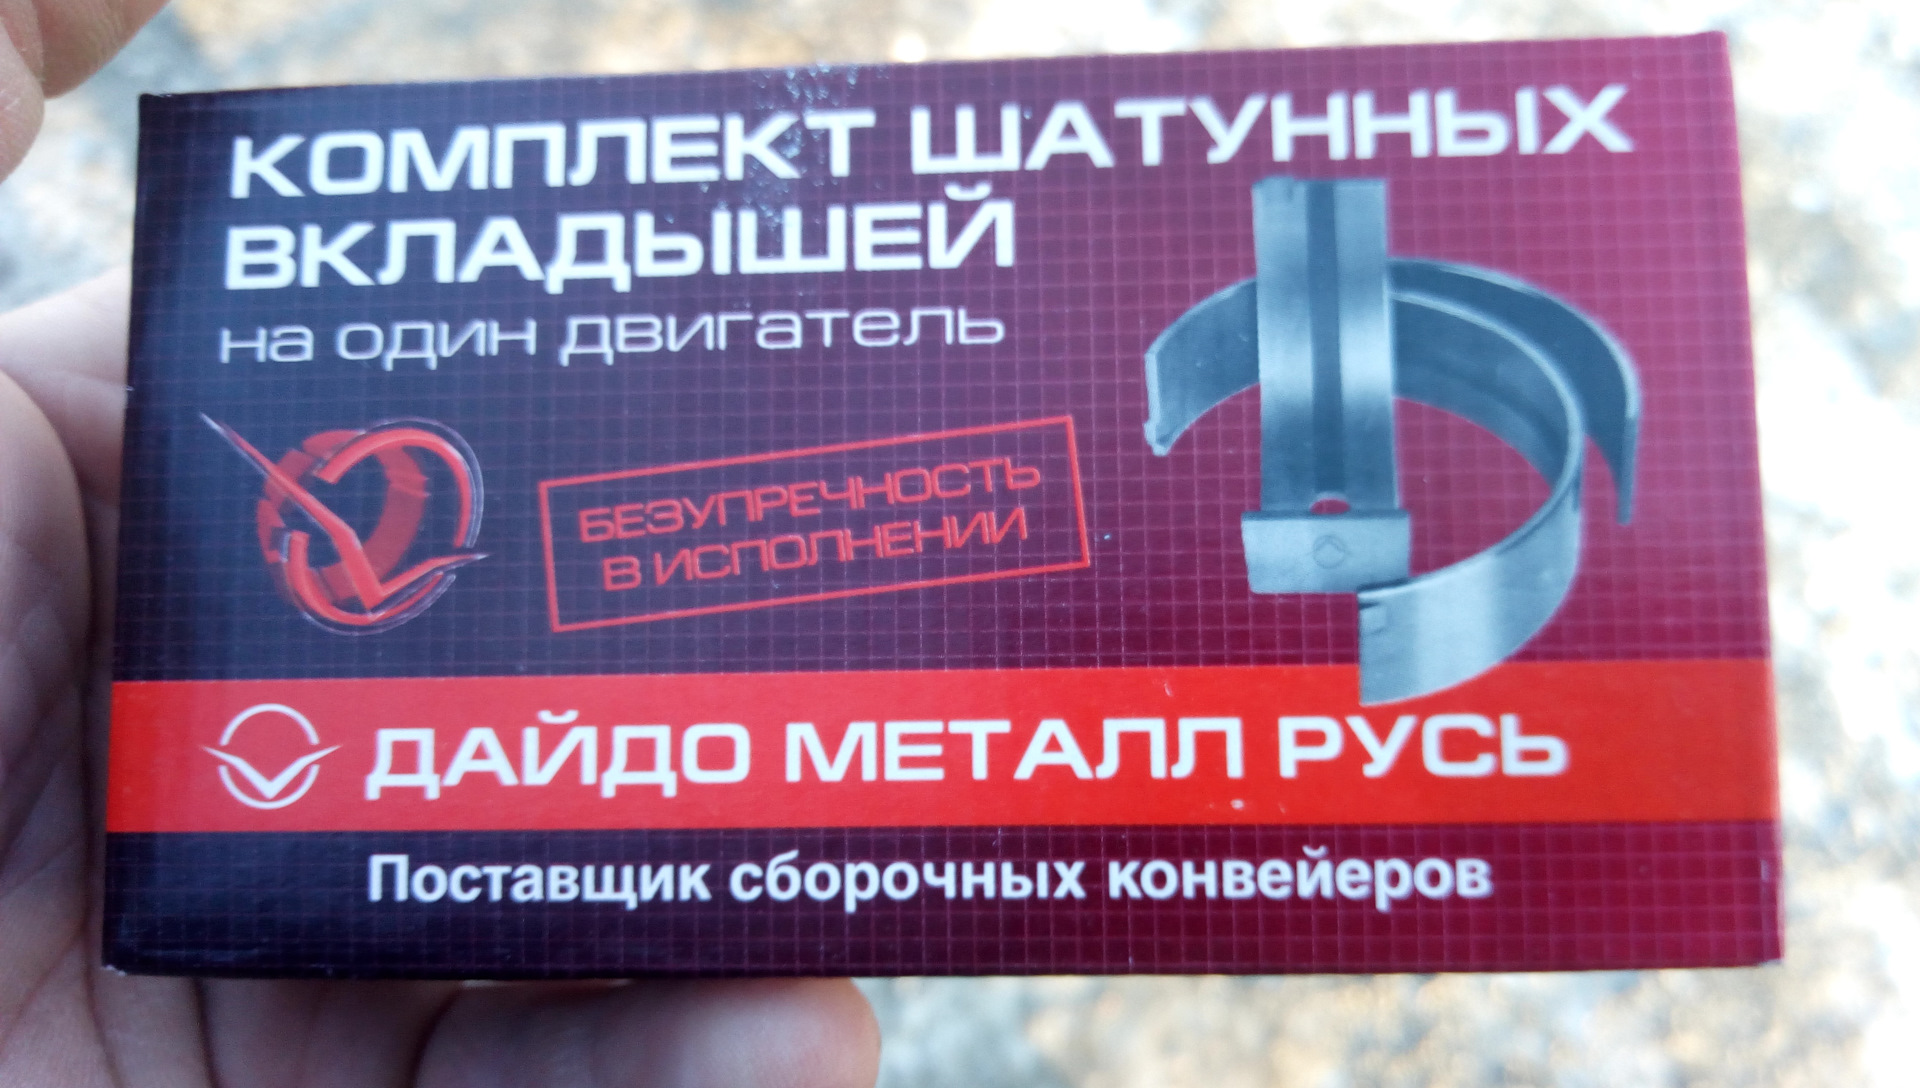 Daido вкладыши. Дайдо металл Русь вкладыши в Киеве. Как выглядят неподдельные вкладыши Дайдо металл шатунные.